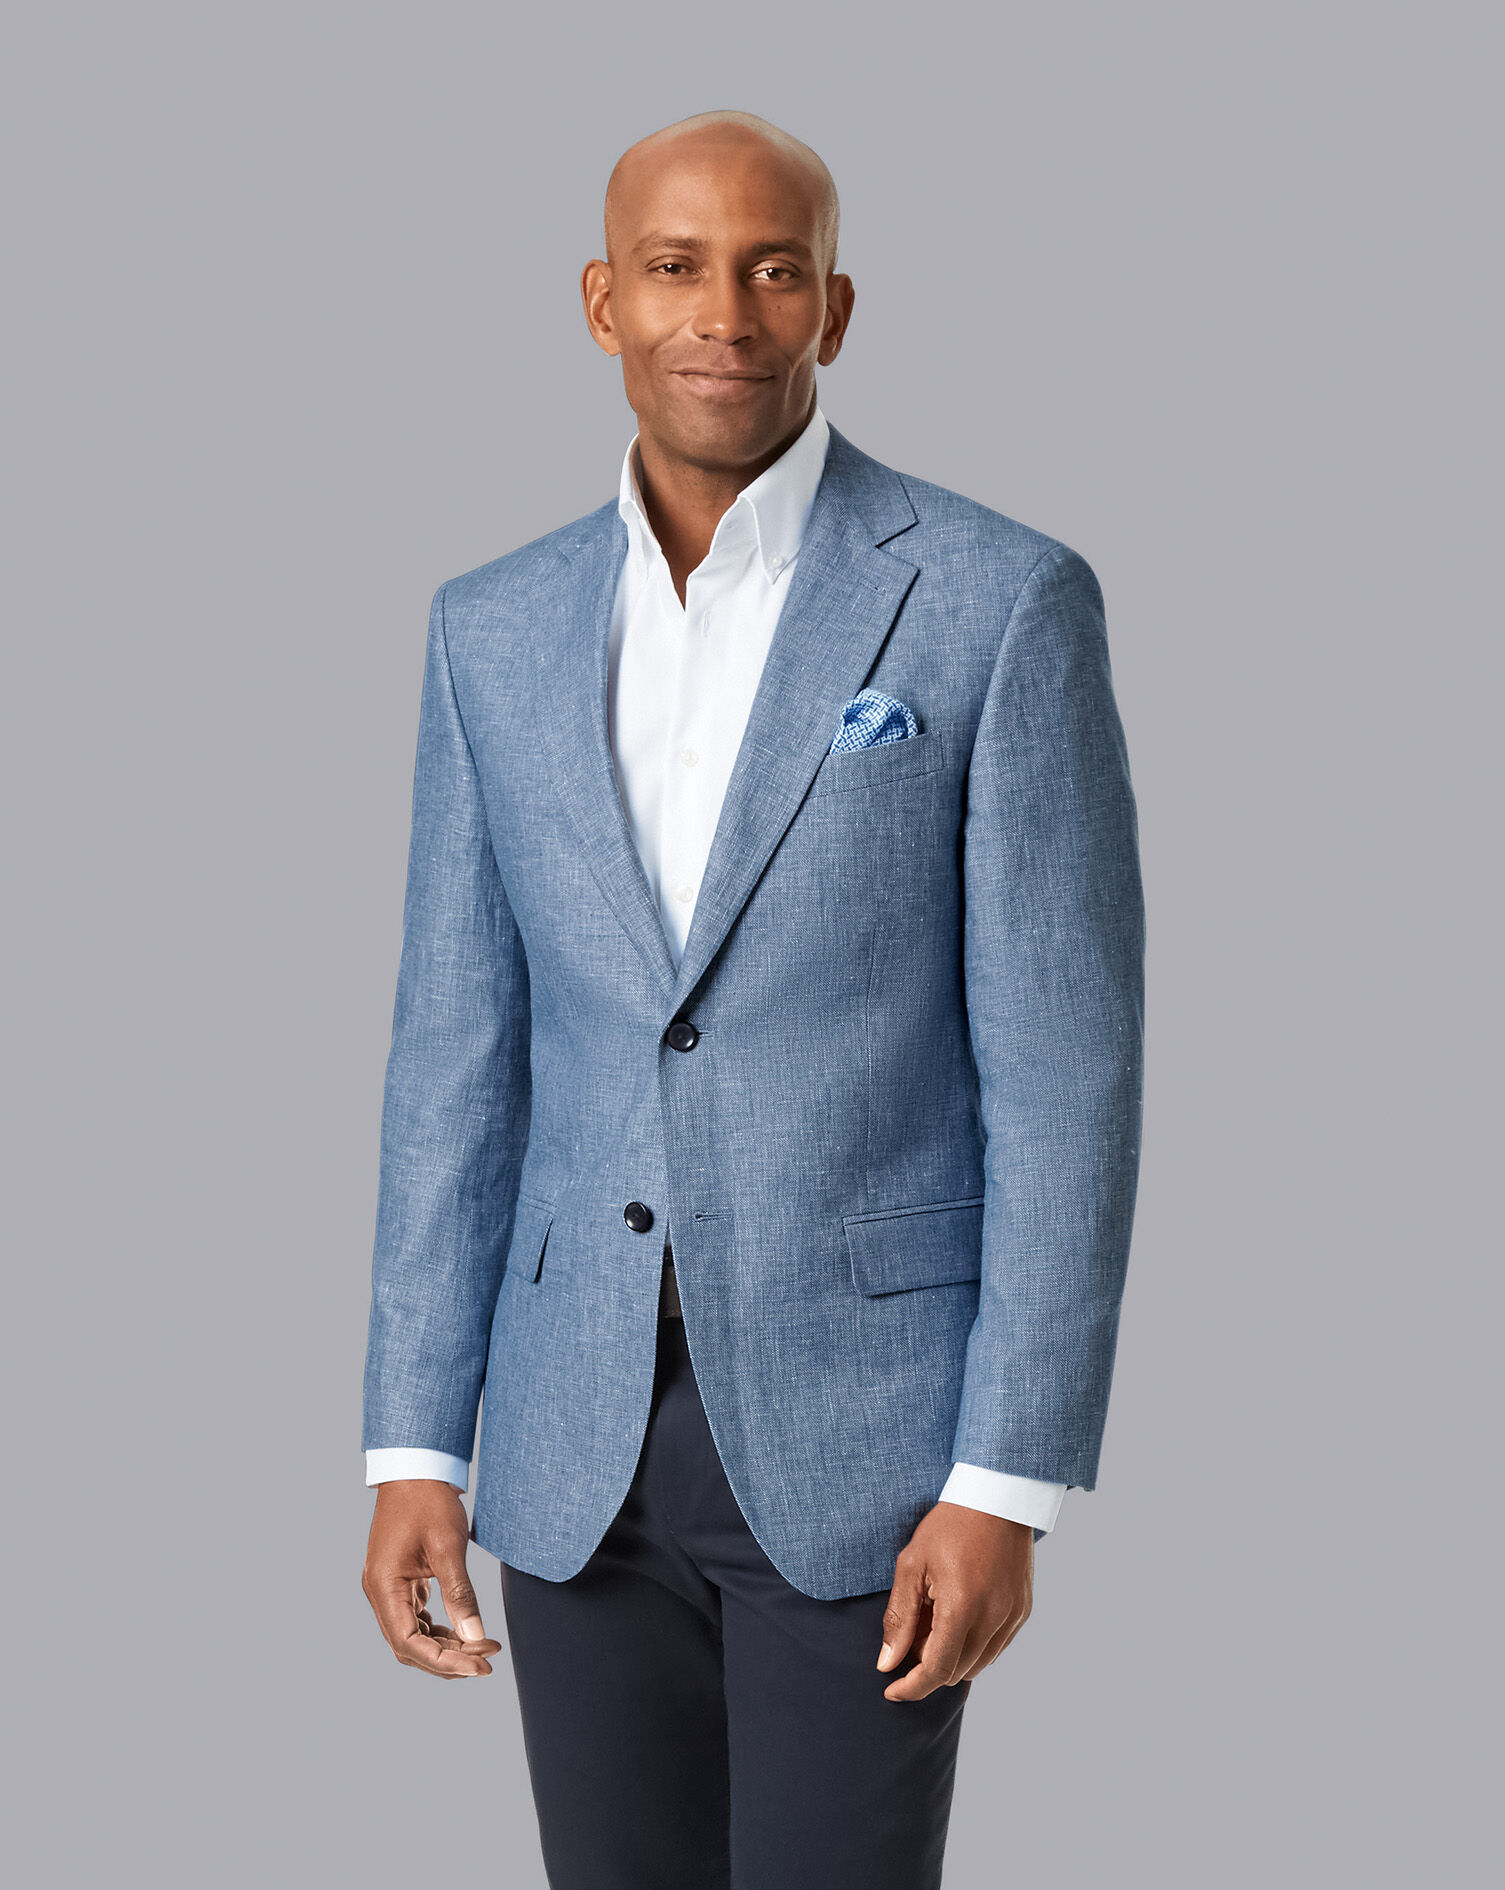 Damen Bekleidung Jacken Blazer TREBARRABI® Baumwolle Jackett in Weiß Sakkos und Anzugsjacken 